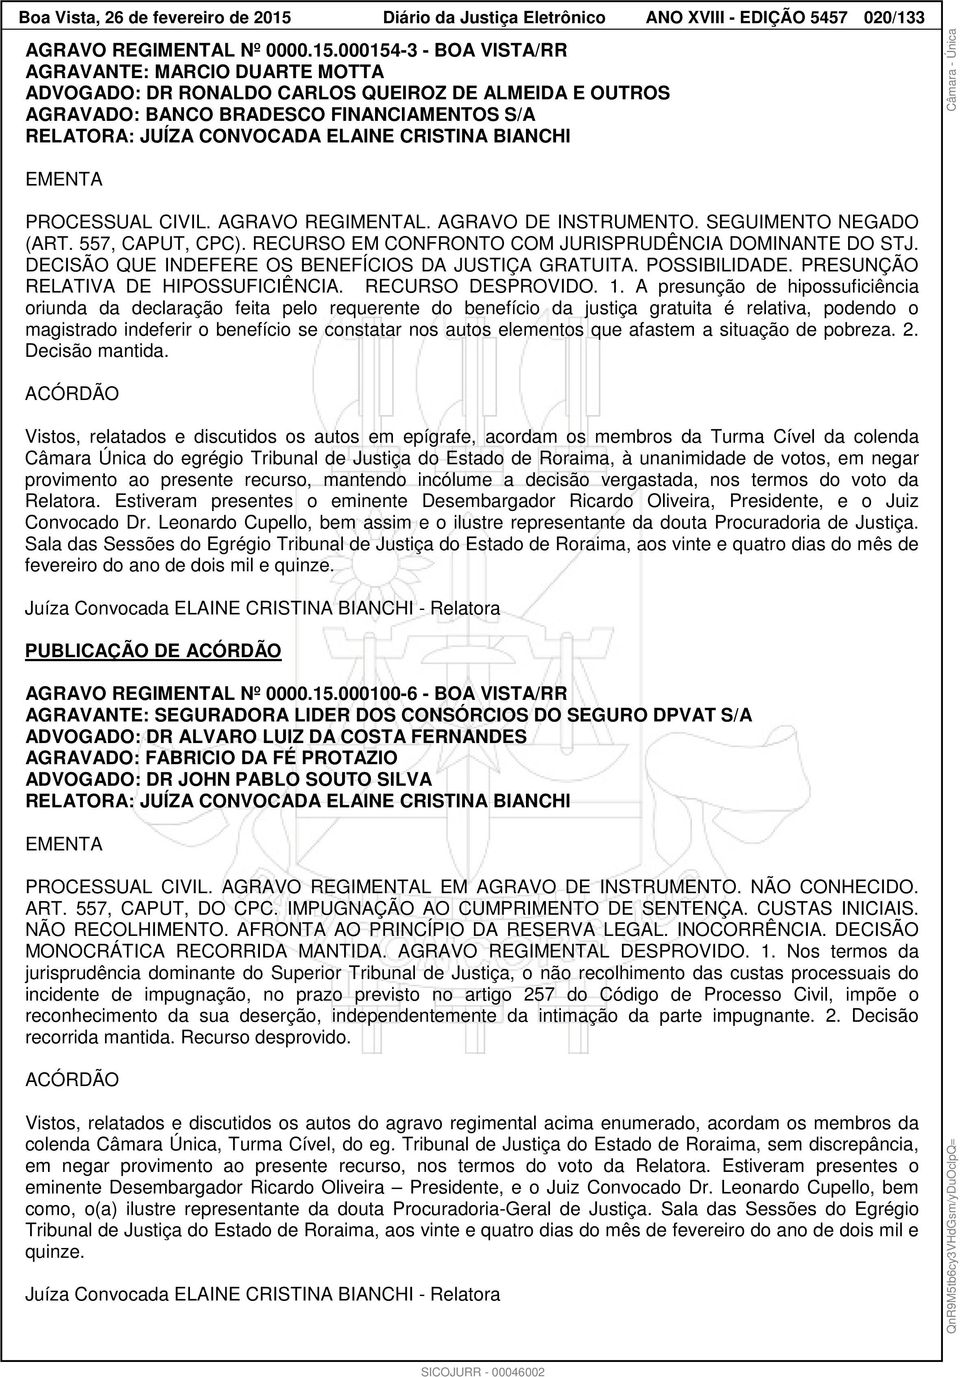 000154-3 - BOA VISTA/RR AGRAVANTE: MARCIO DUARTE MOTTA ADVOGADO: DR RONALDO CARLOS QUEIROZ DE ALMEIDA E OUTROS AGRAVADO: BANCO BRADESCO FINANCIAMENTOS S/A RELATORA: JUÍZA CONVOCADA ELAINE CRISTINA